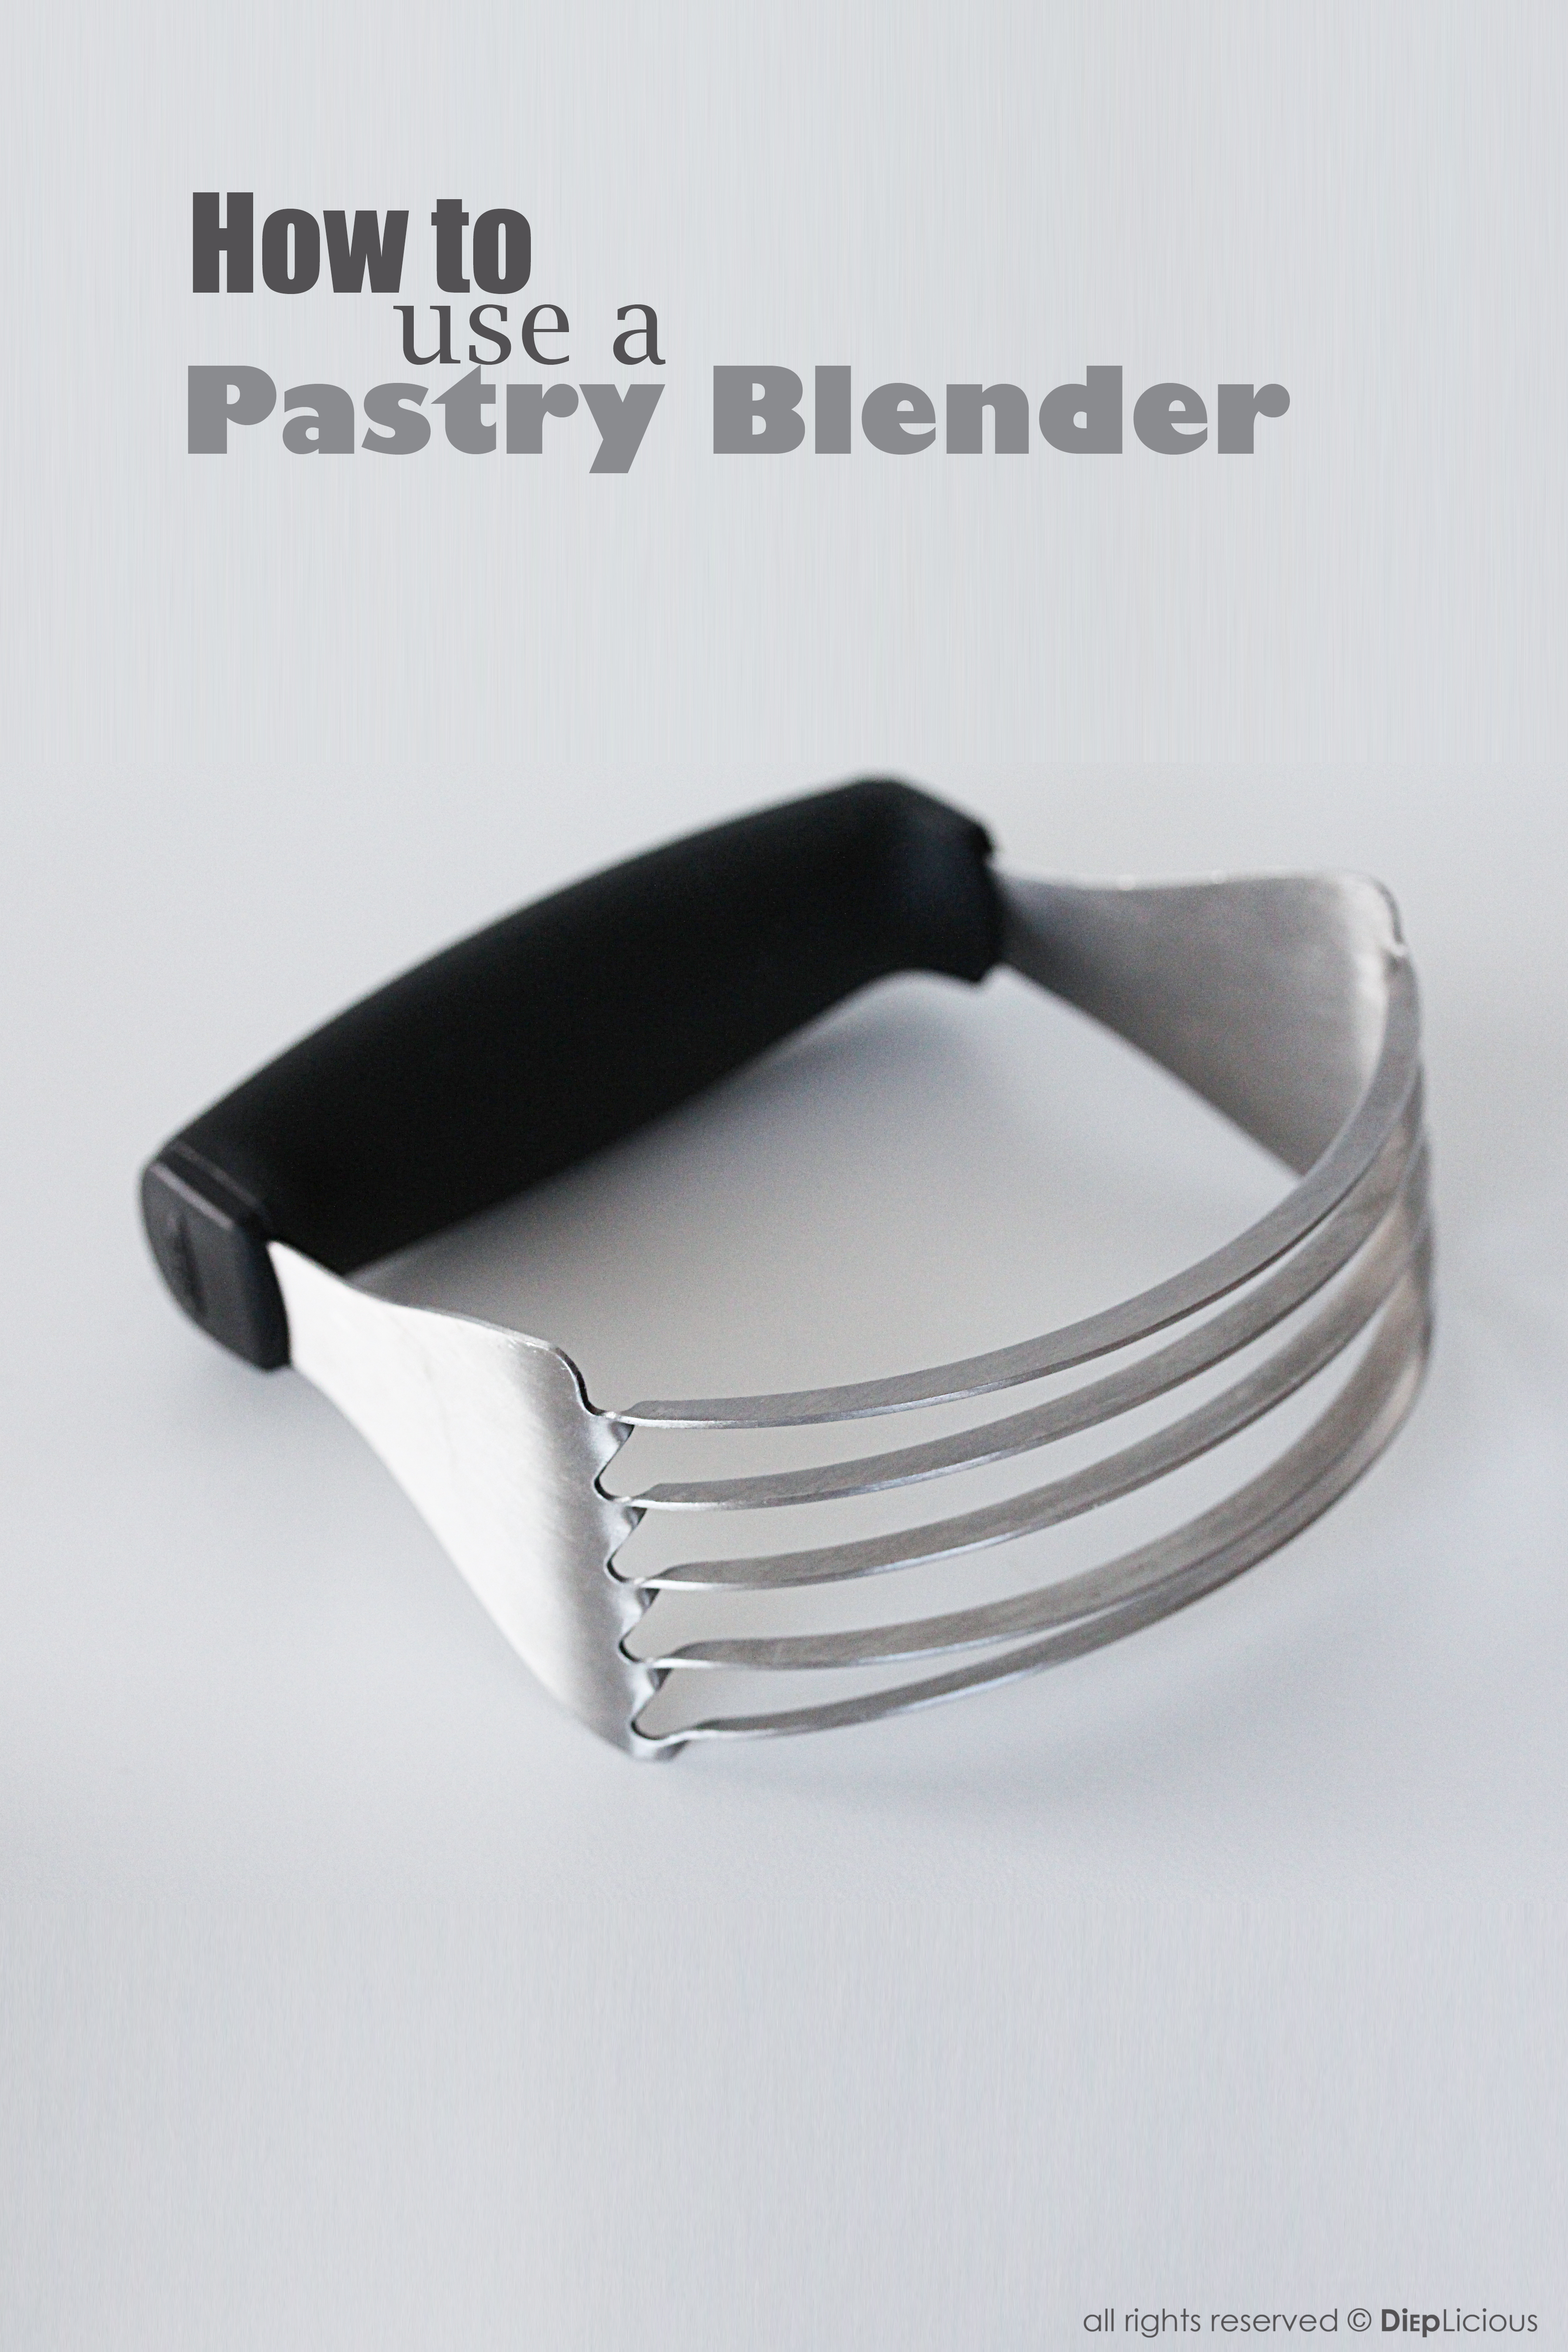 Pastry-blender